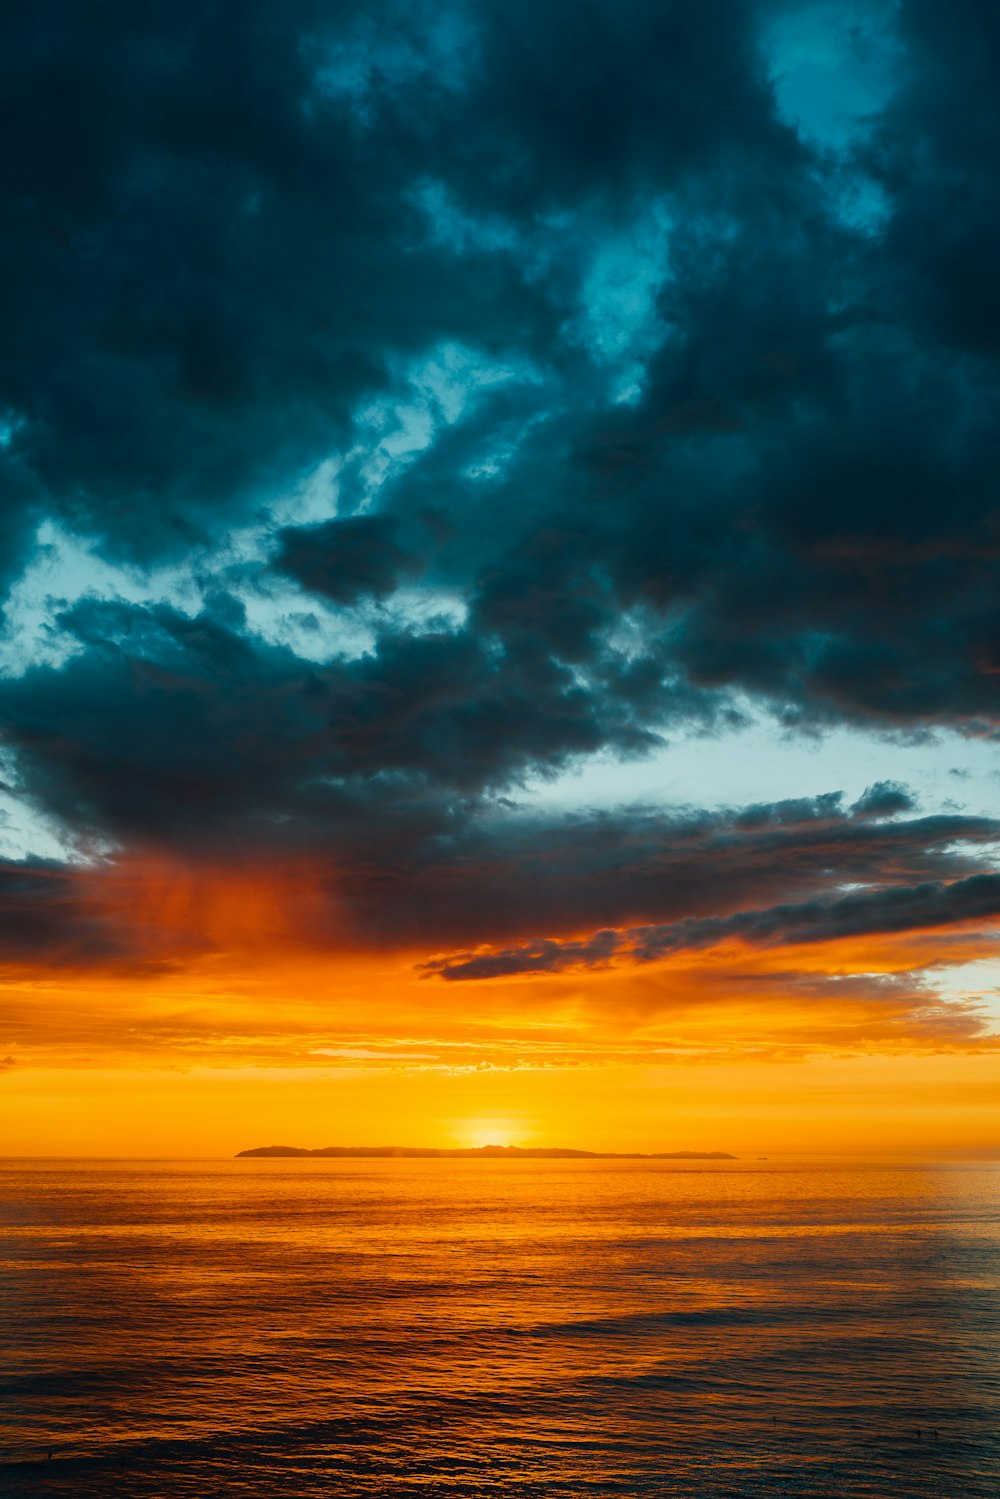 nuvole verdi e nere che coprono parzialmente il cielo arancione sul mare al tramonto